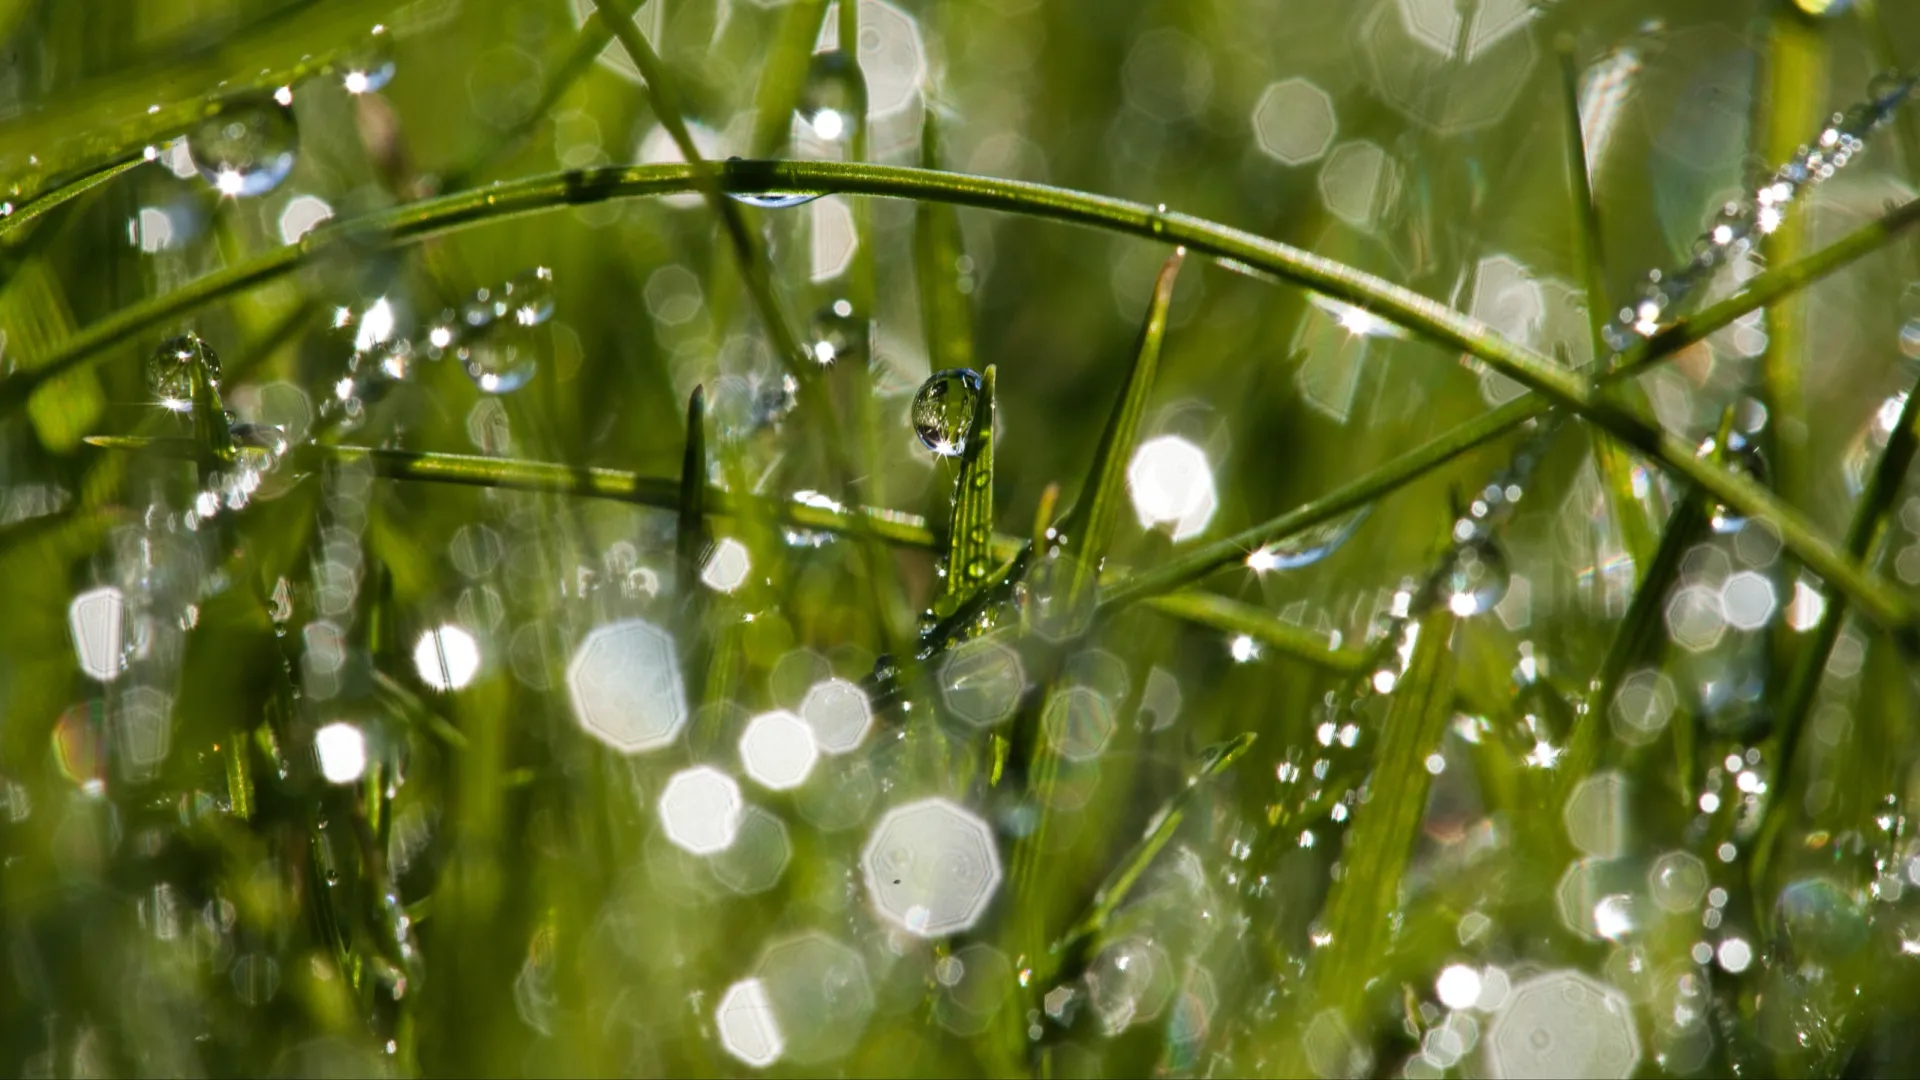 Обильная роса на Марфу Рассадницу предвещала потепление и хороший урожай огурцов. Фото: fossey suzanne/Shutterstock/Fotodom